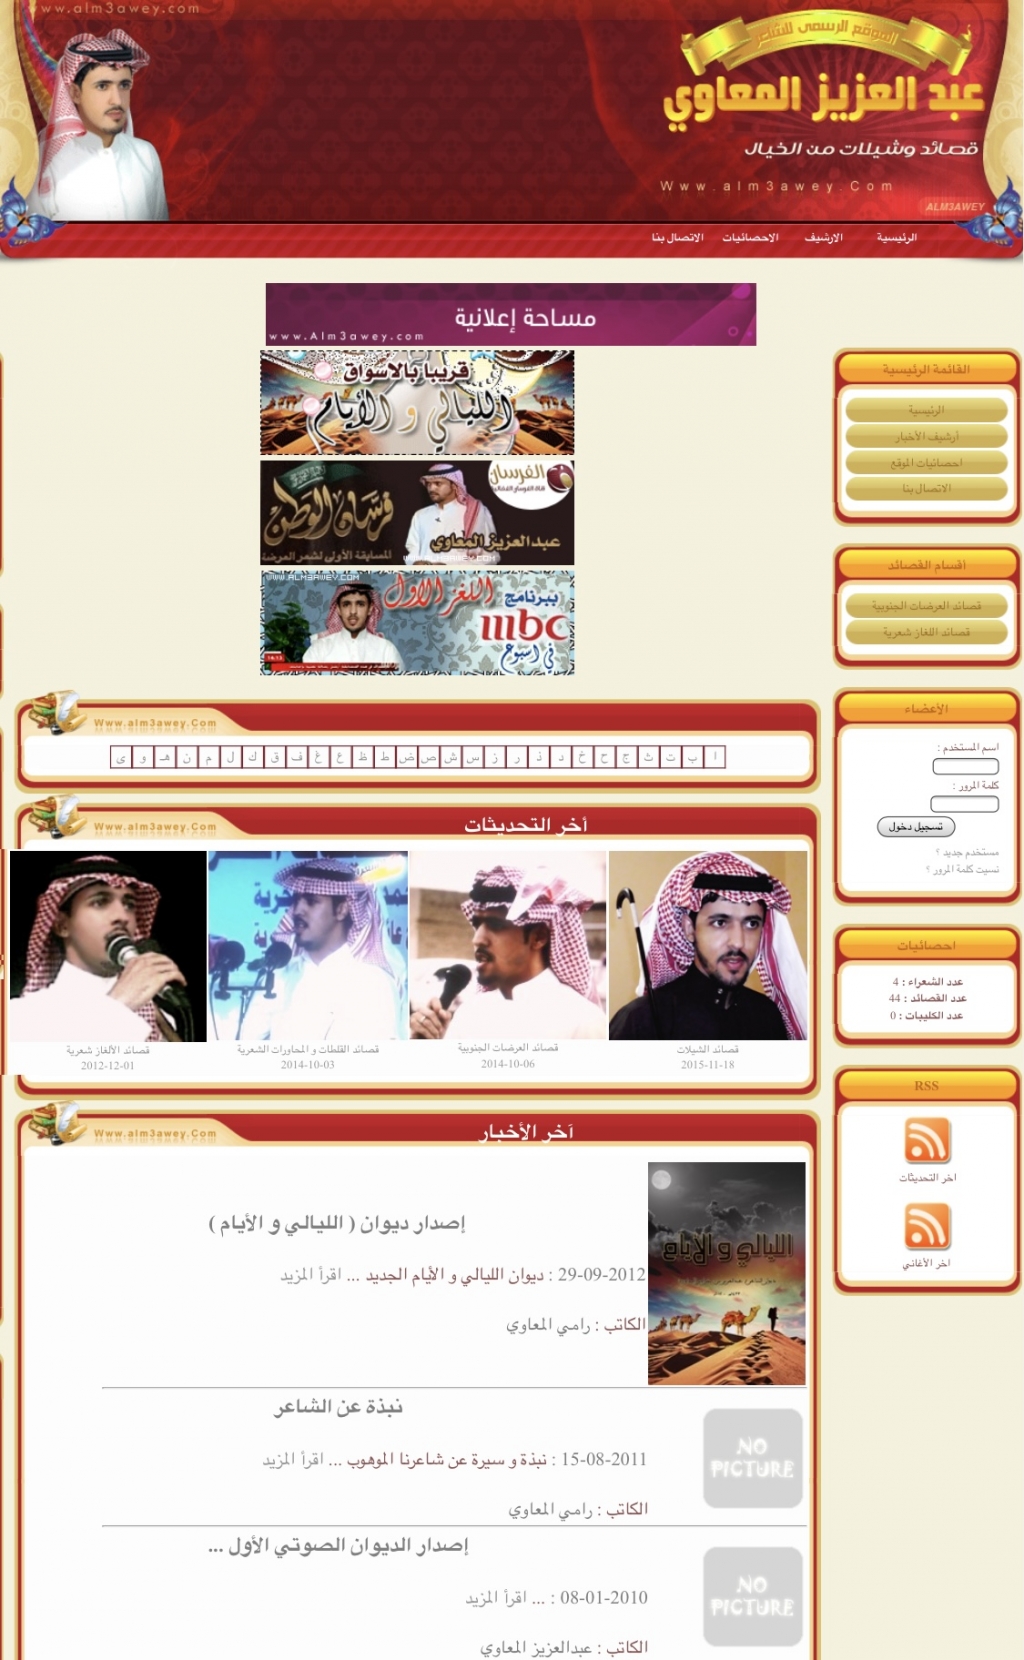 الموقع الرسمي للشاعر/ عبدالعزيز بن مفراص المعاوي